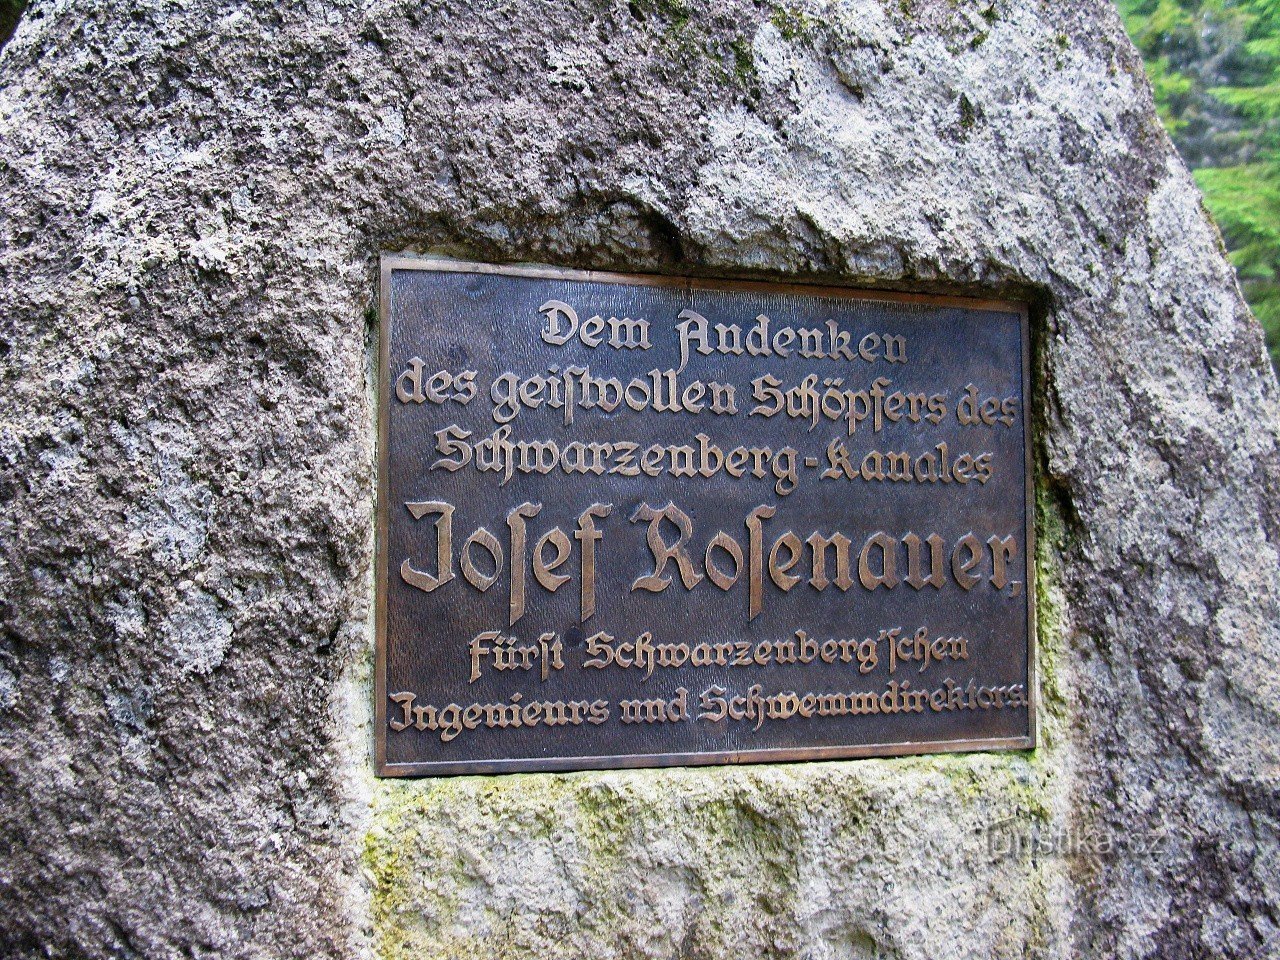 Надпись на памятнике на немецком языке.